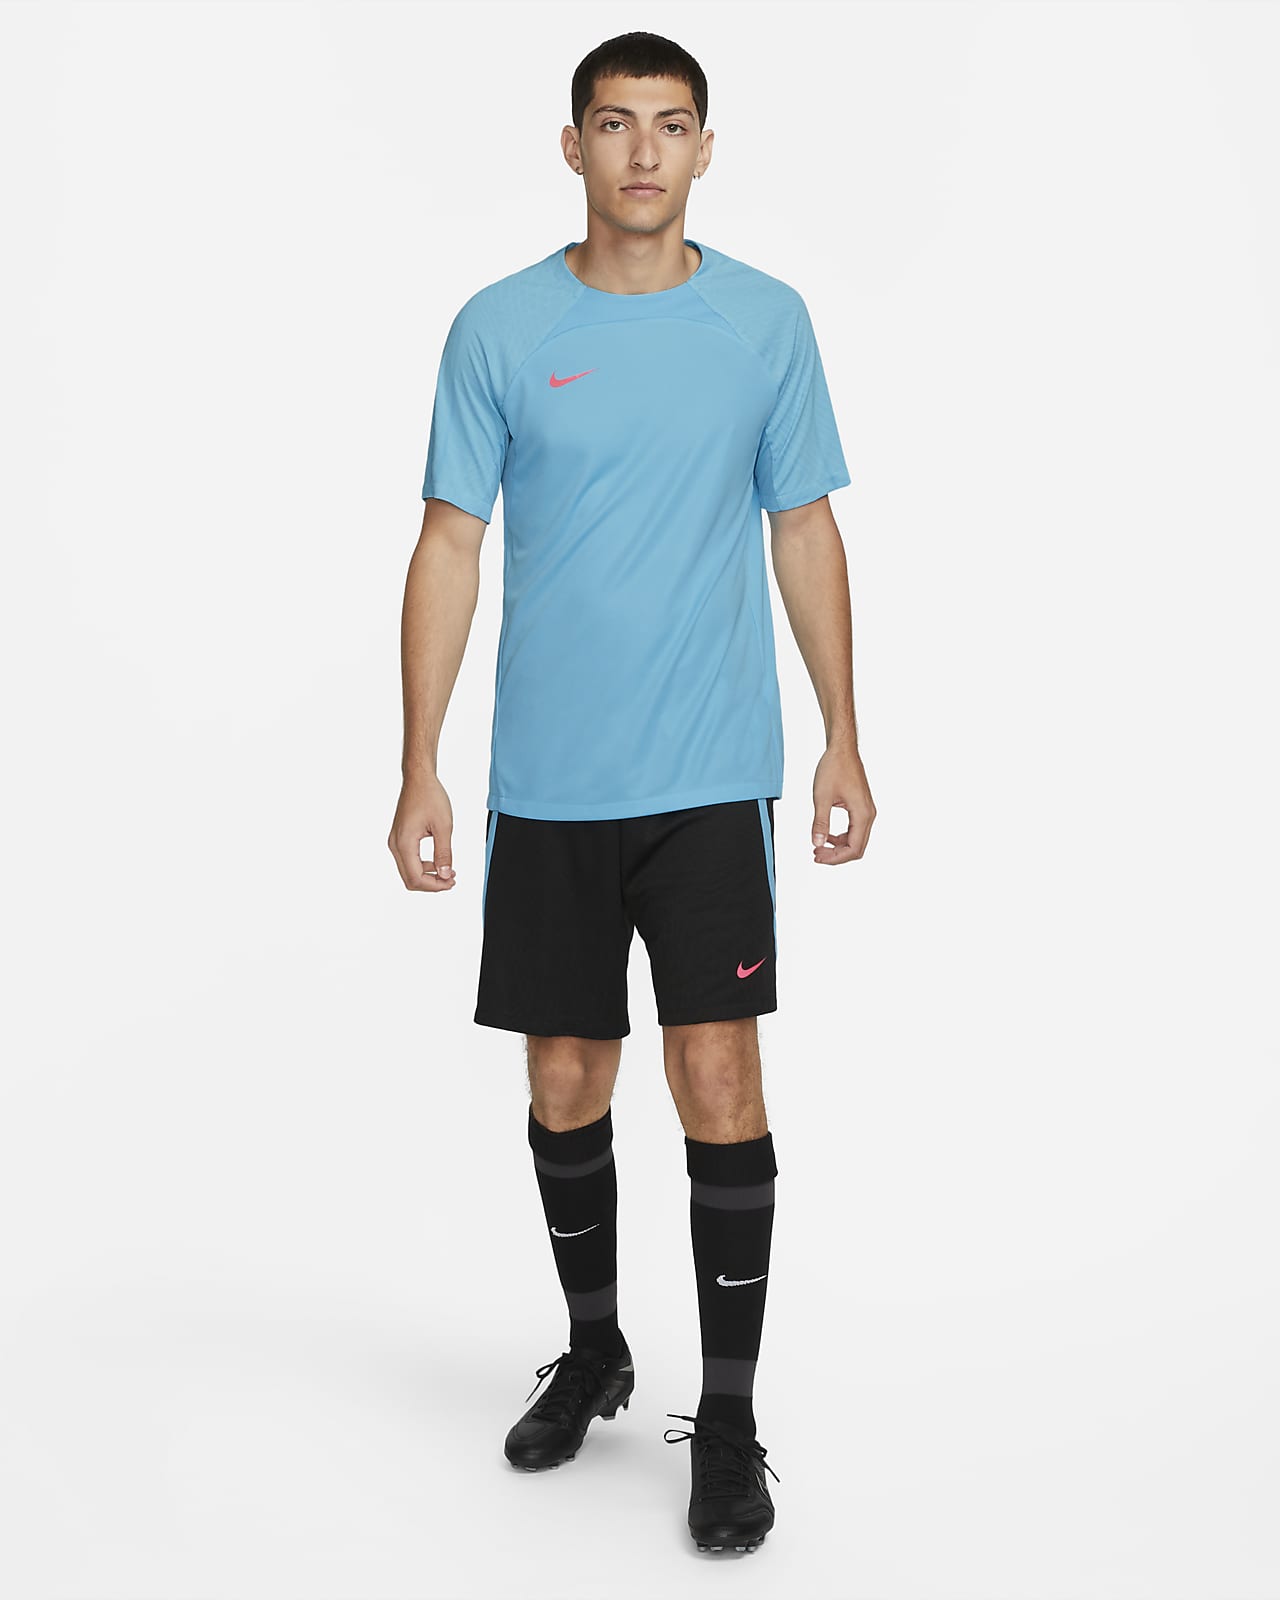 Verrassend genoeg Origineel Buitengewoon Nike Dri-FIT Strike Men's Short-Sleeve Football Top. Nike LU